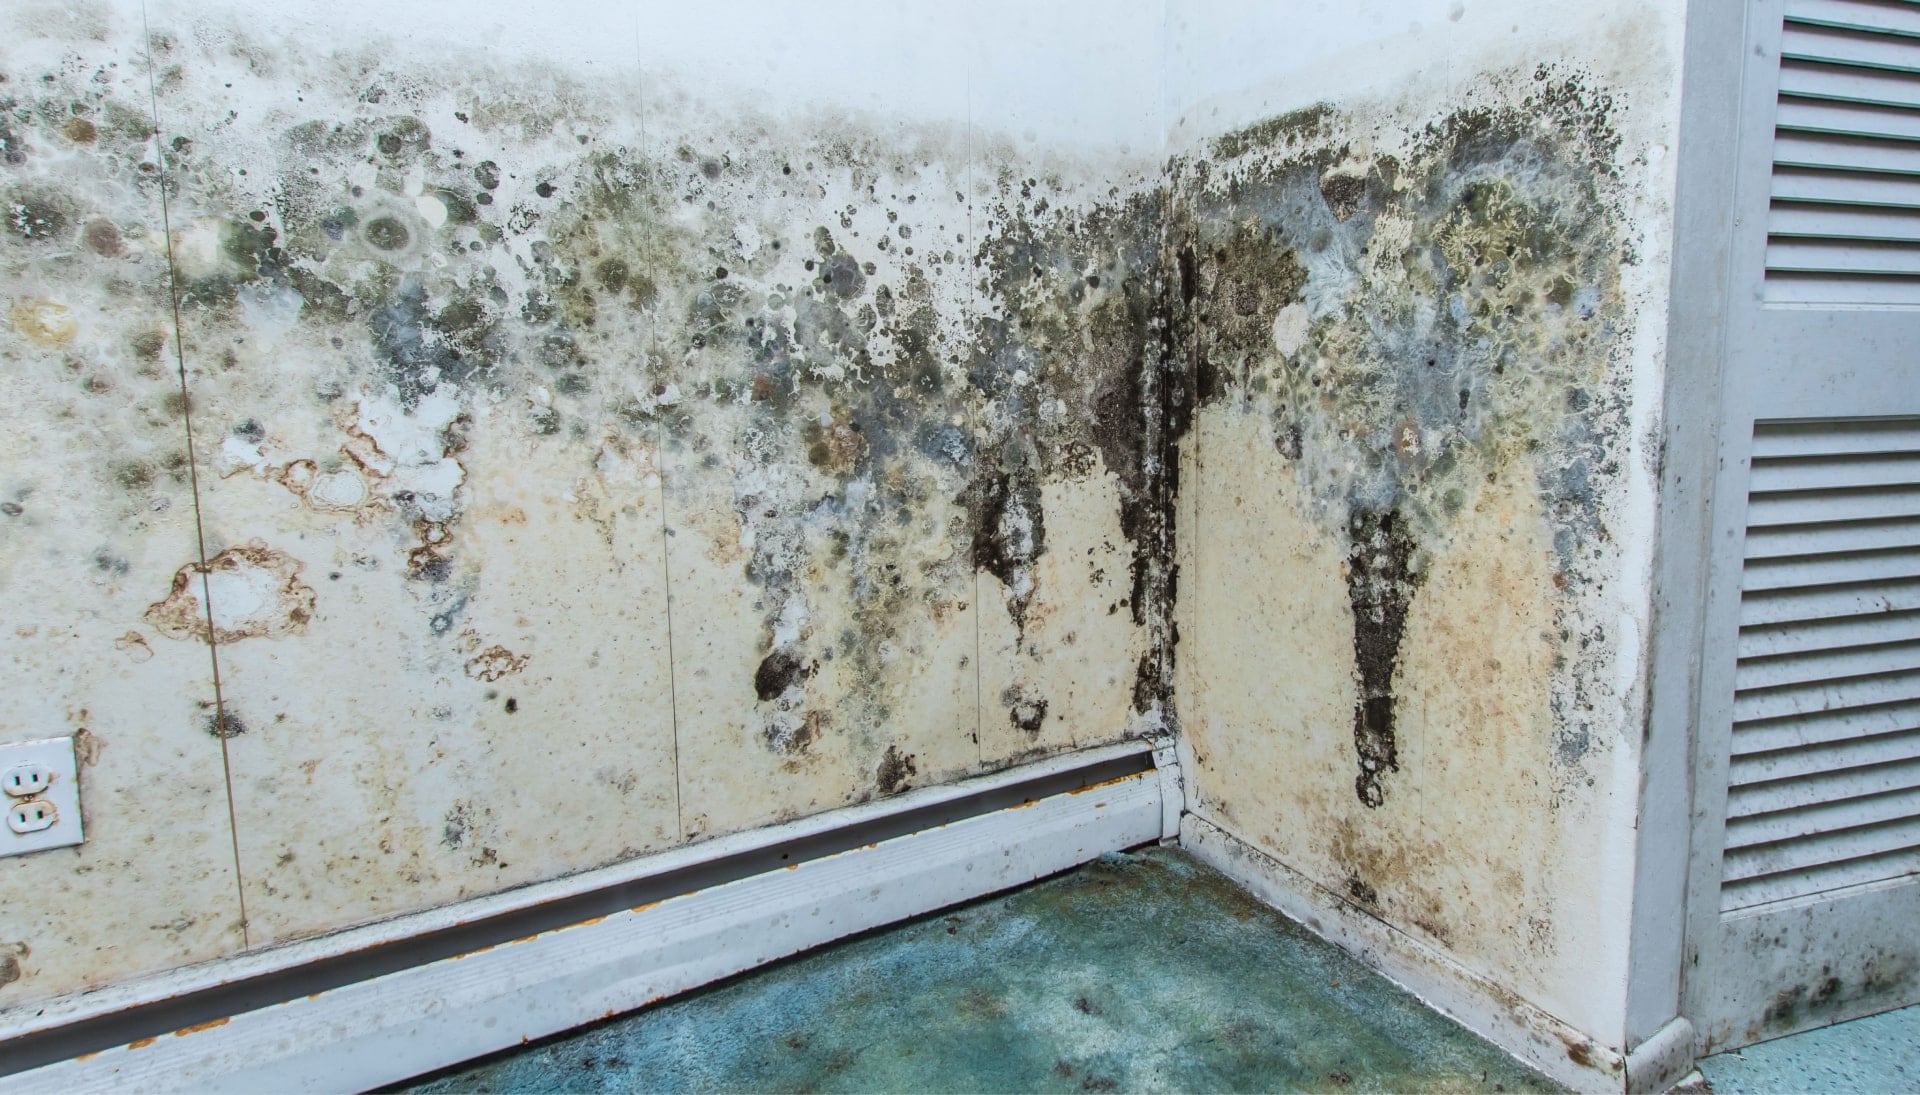 Mold-Damager-Odor-Control in Washington